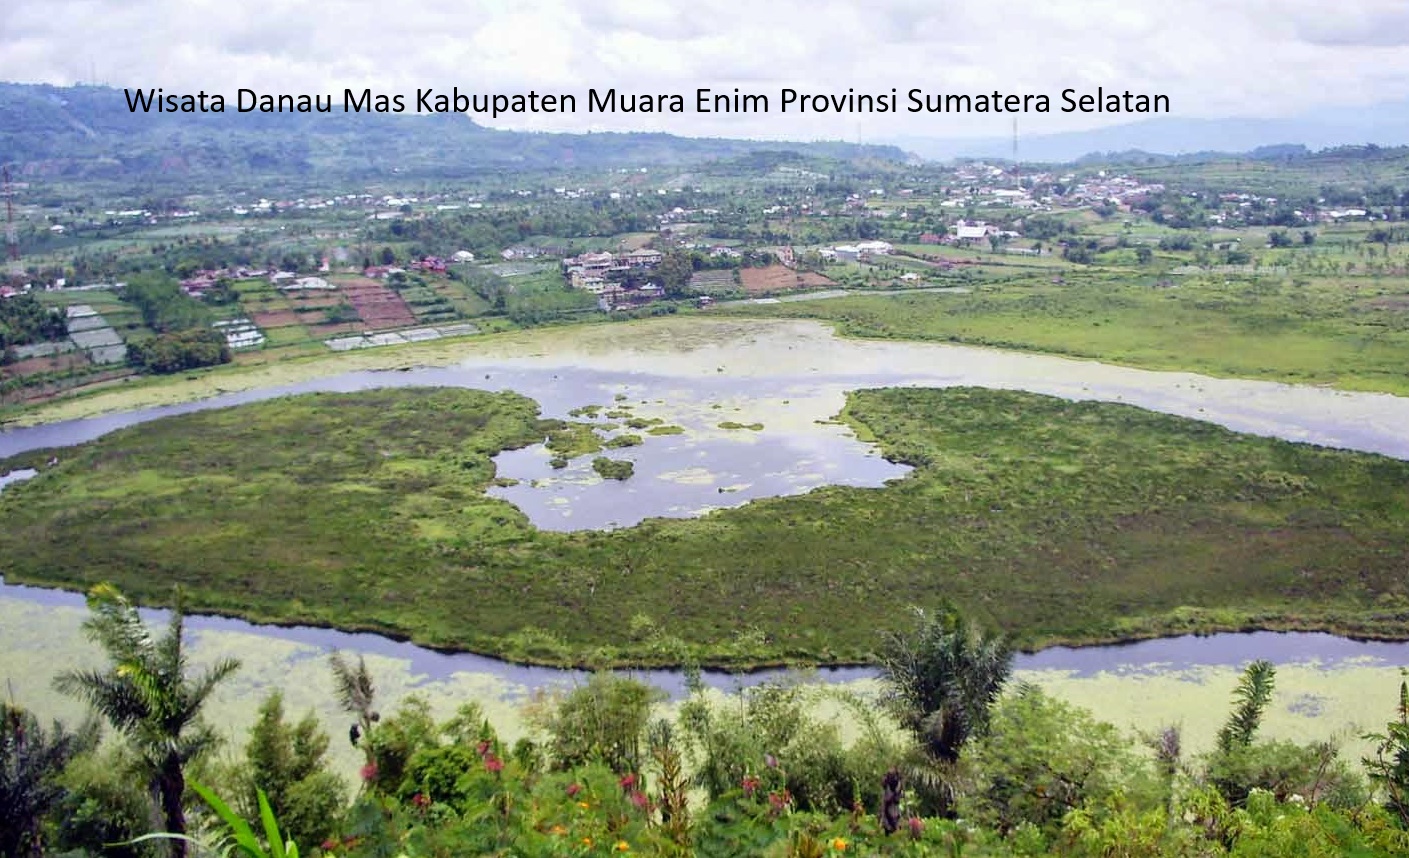 Usulan Pemekaran Kabupaten Muara Enim: Potret Pembentukan Daerah Otonomi Baru di Sumatera Selatan